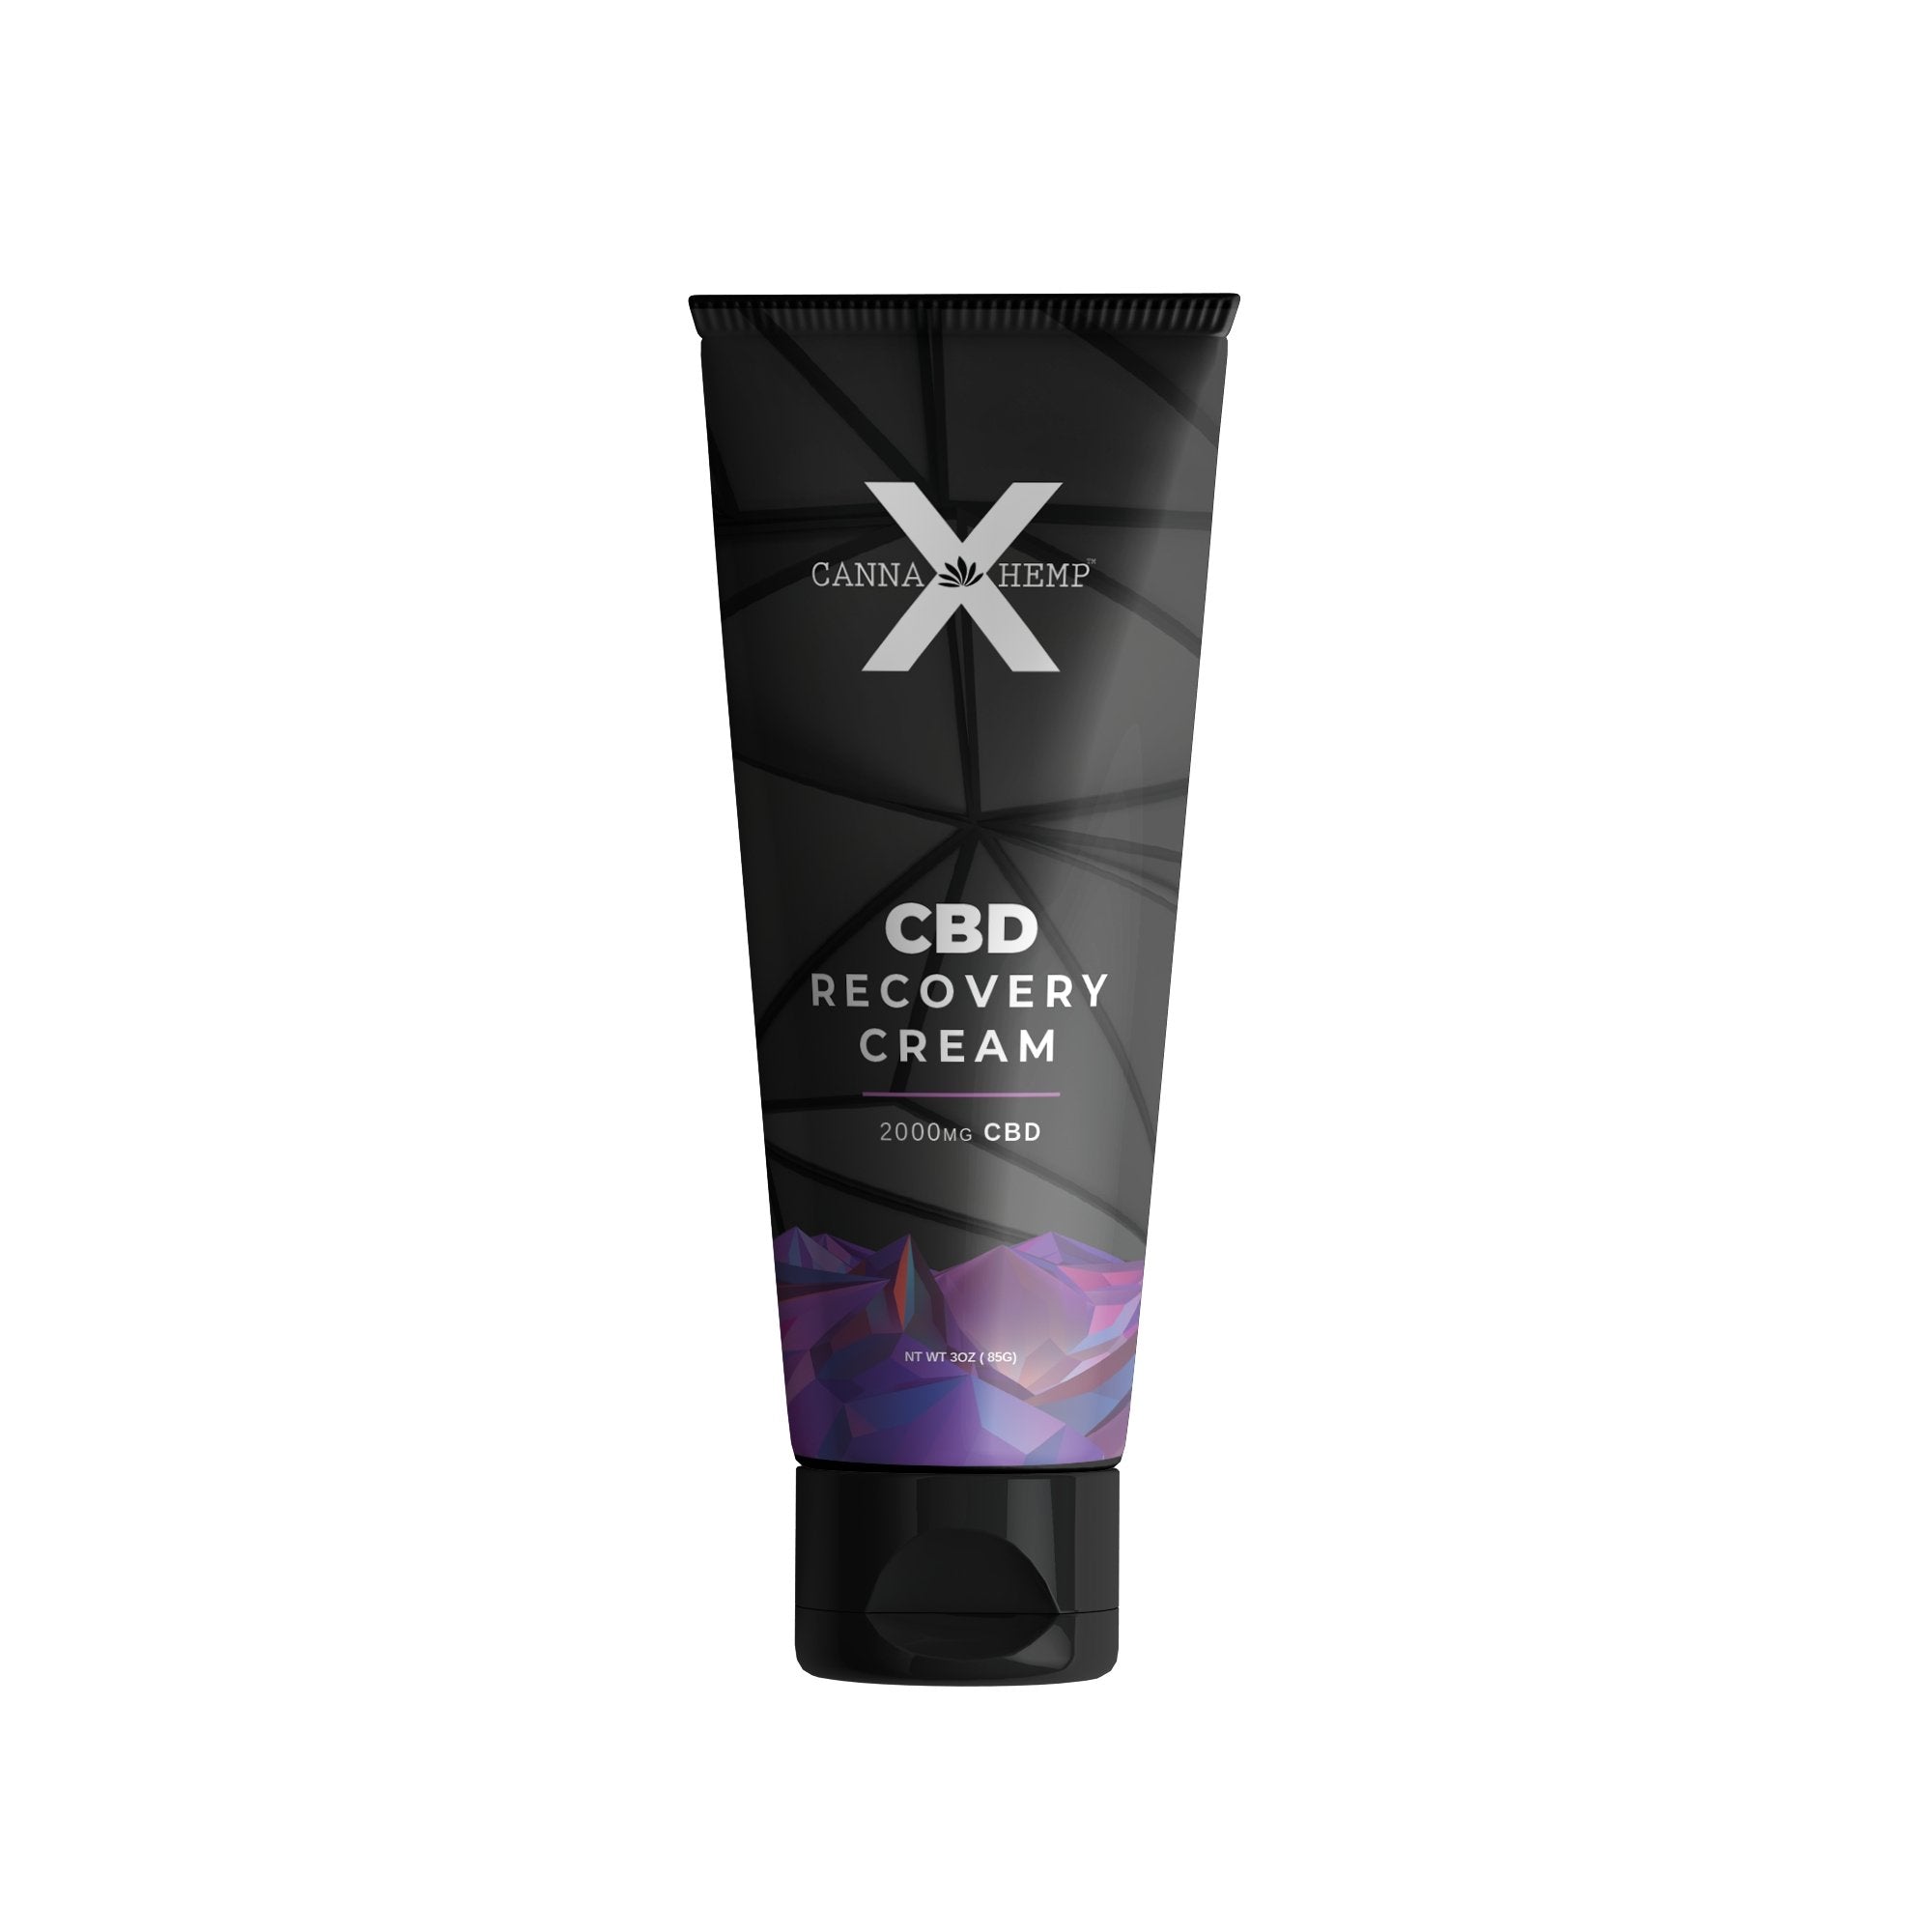 CBD Canna Hemp X Recovery Cream 2000mg Best Price